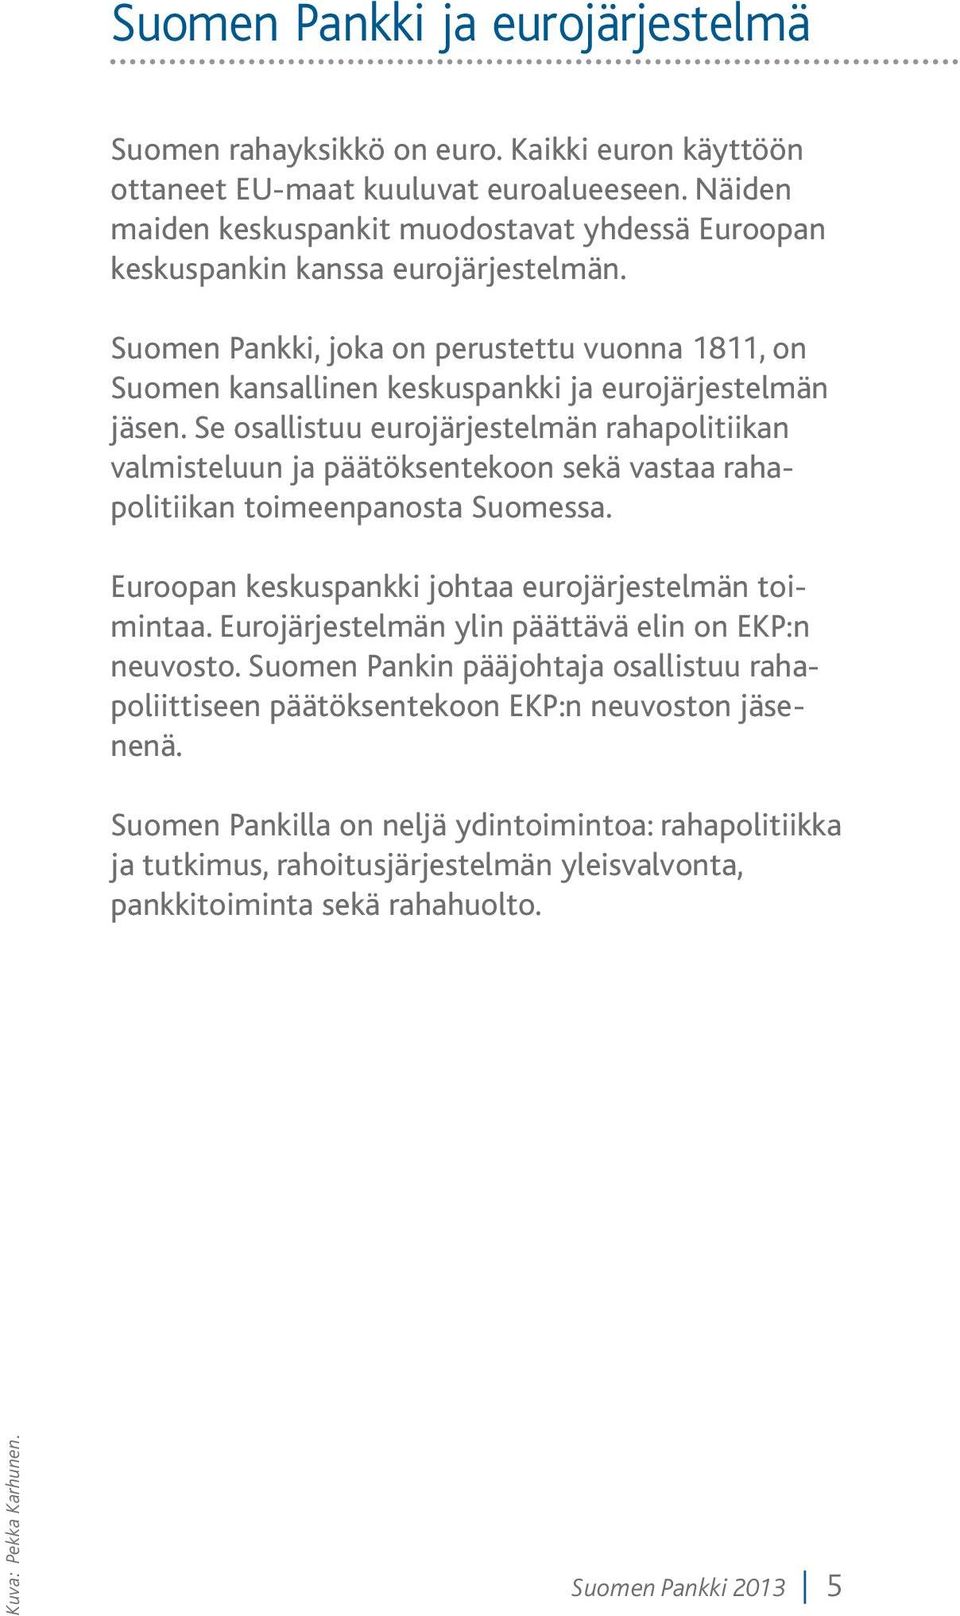 Suomen Pankki, joka on perustettu vuonna 1811, on Suomen kansallinen keskuspankki ja eurojärjestelmän jäsen.